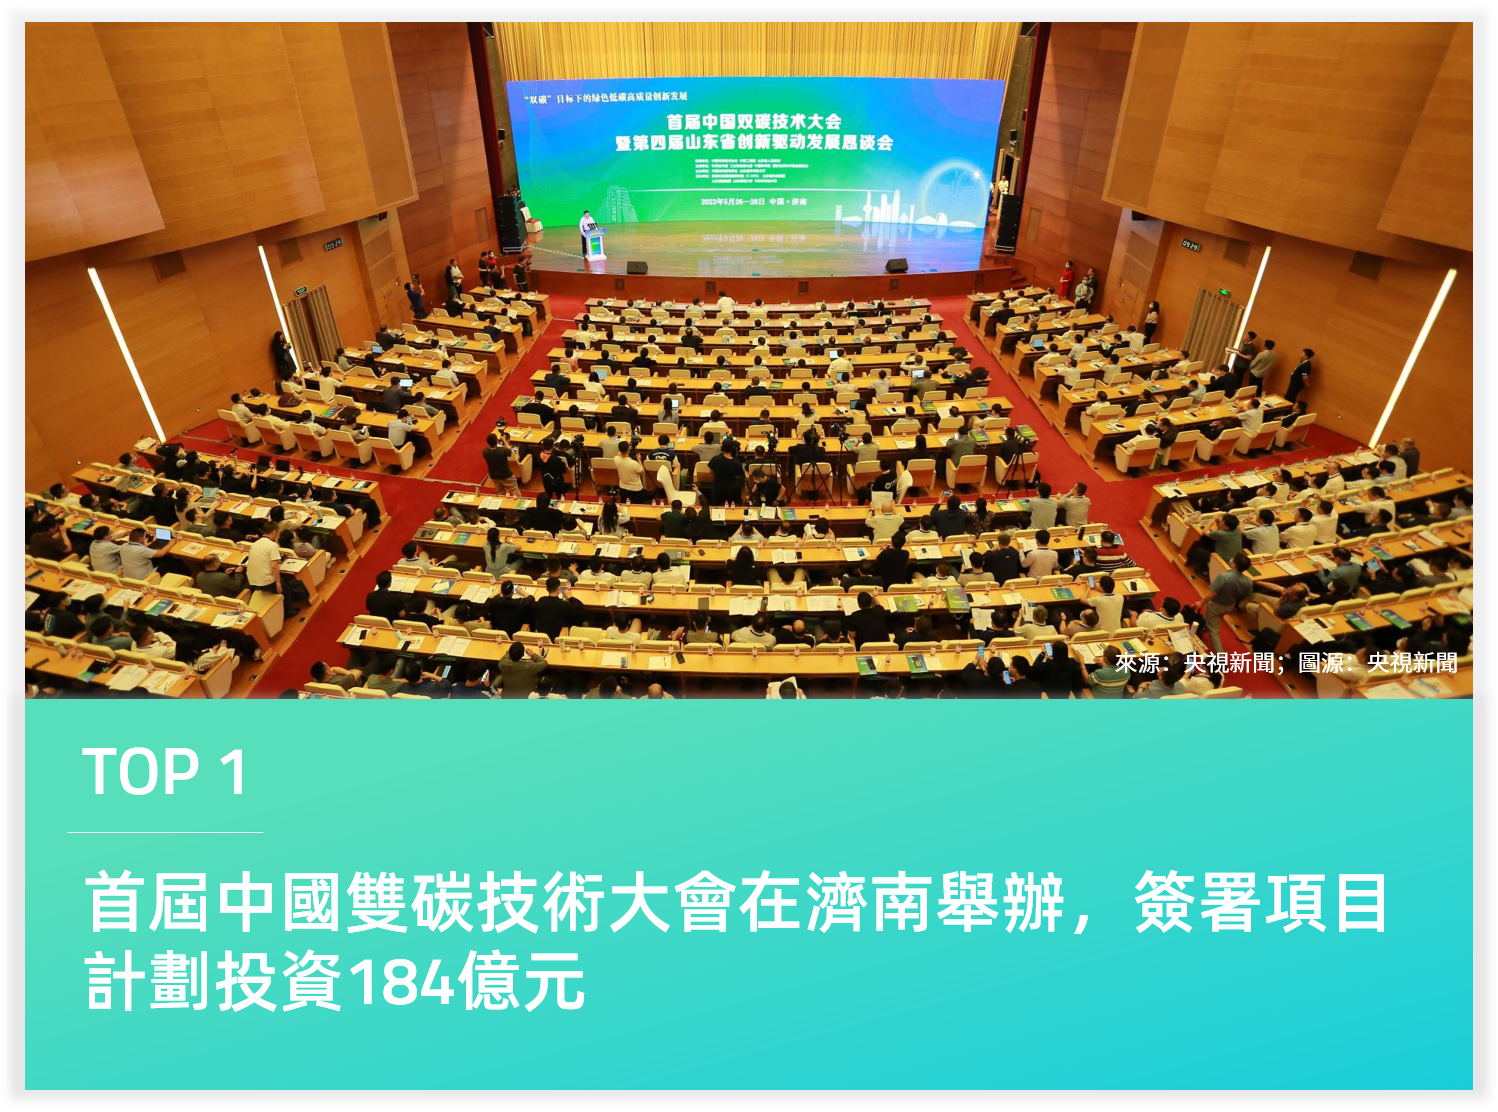 首屆中國雙碳技術大會在濟南舉辦，簽署項目計劃投資184億元